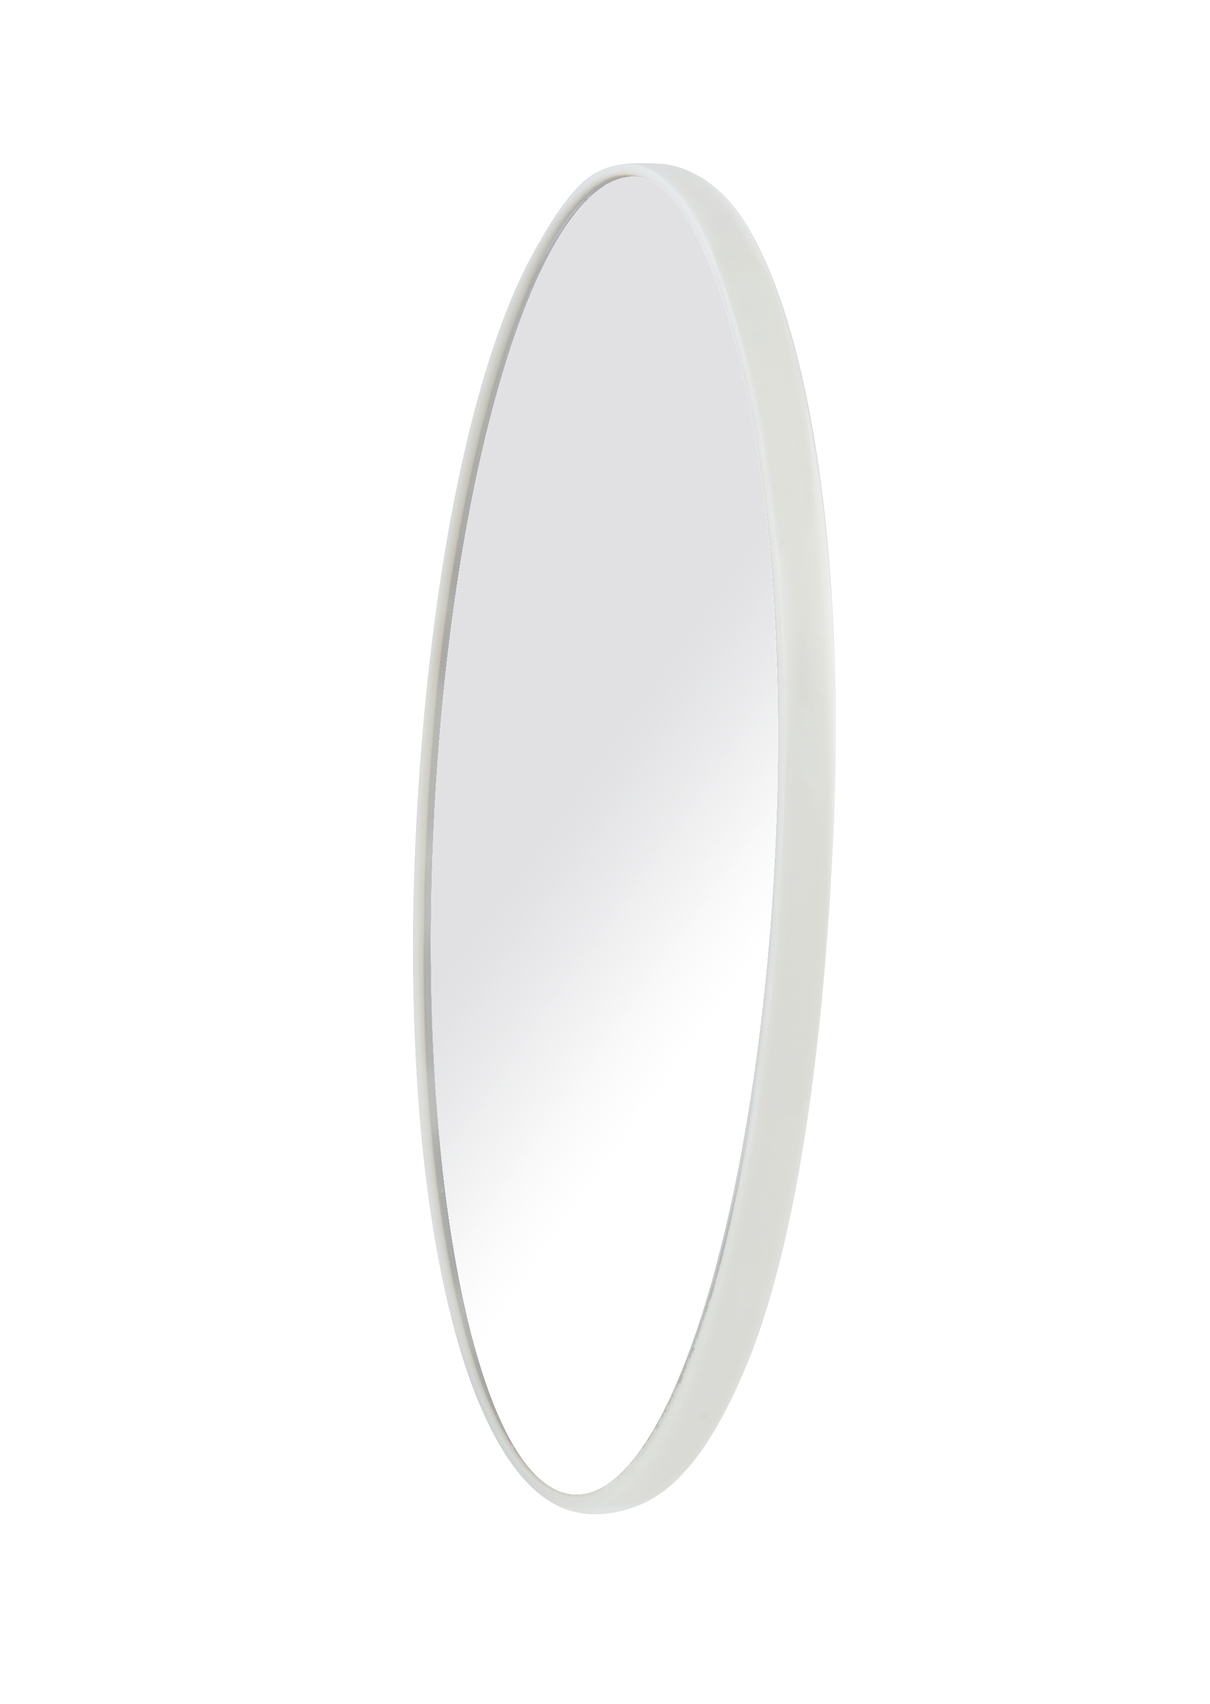 Wenko Kosmetikspiegel Ø 12 cm, 3-fache Vergrößerung, silber glänzend